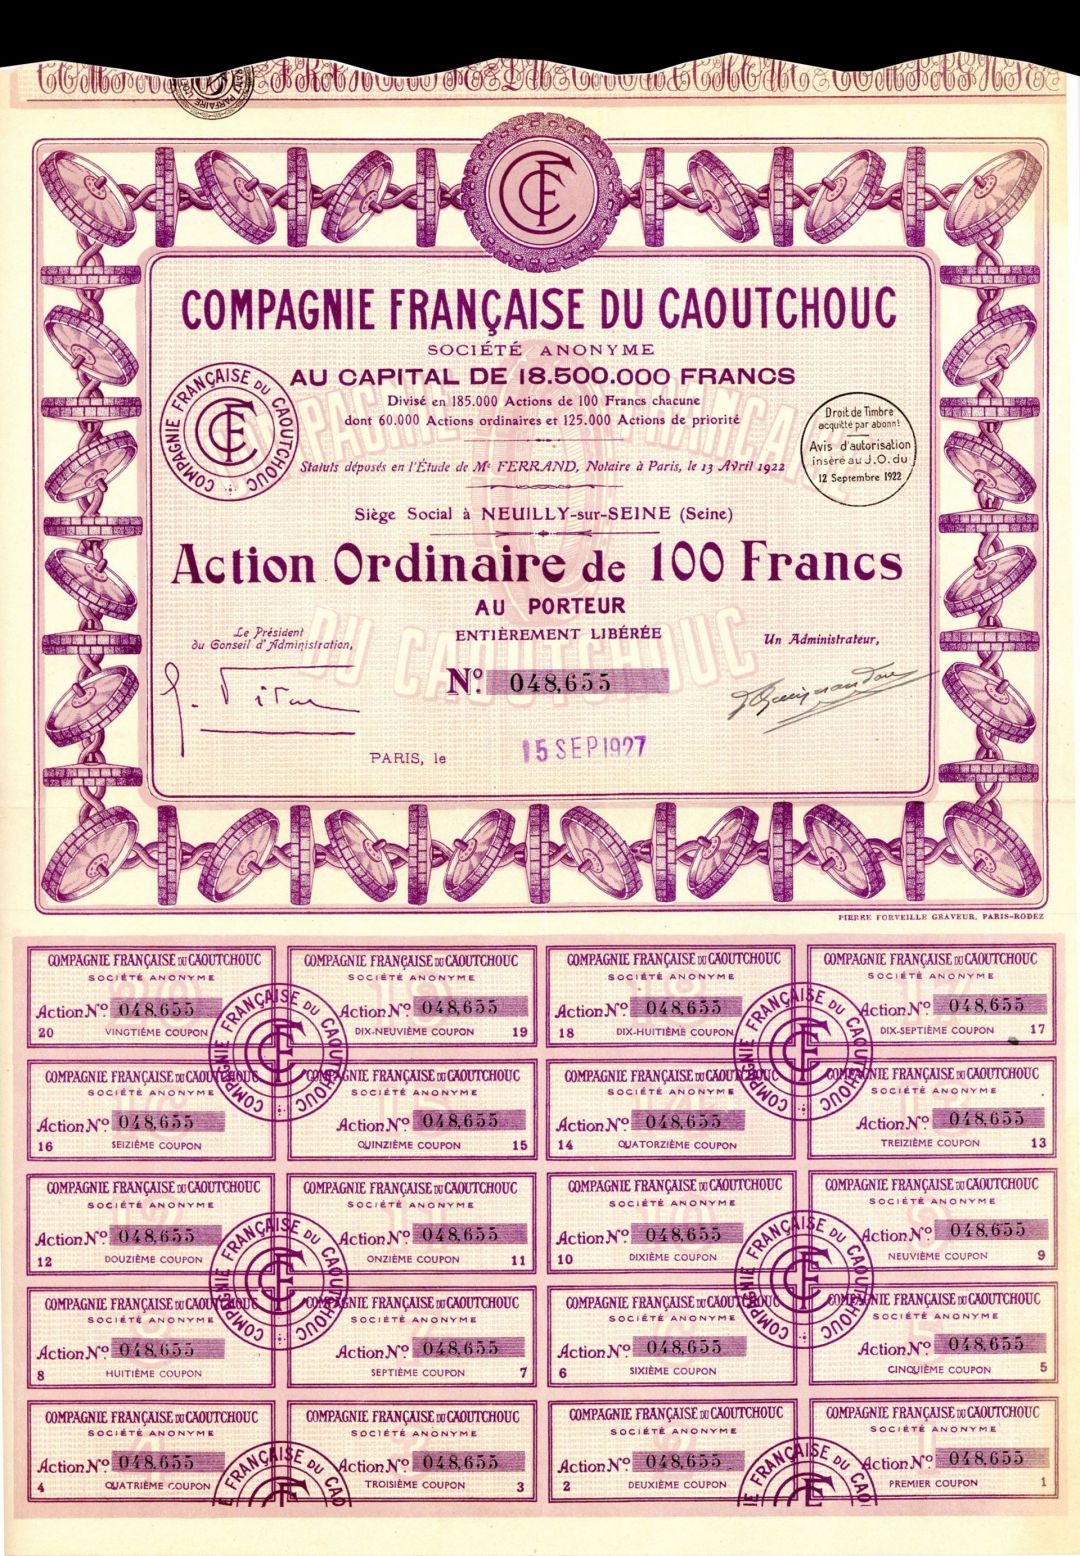 Compagnie Francaise du Caoutchouc - Stock Certificate